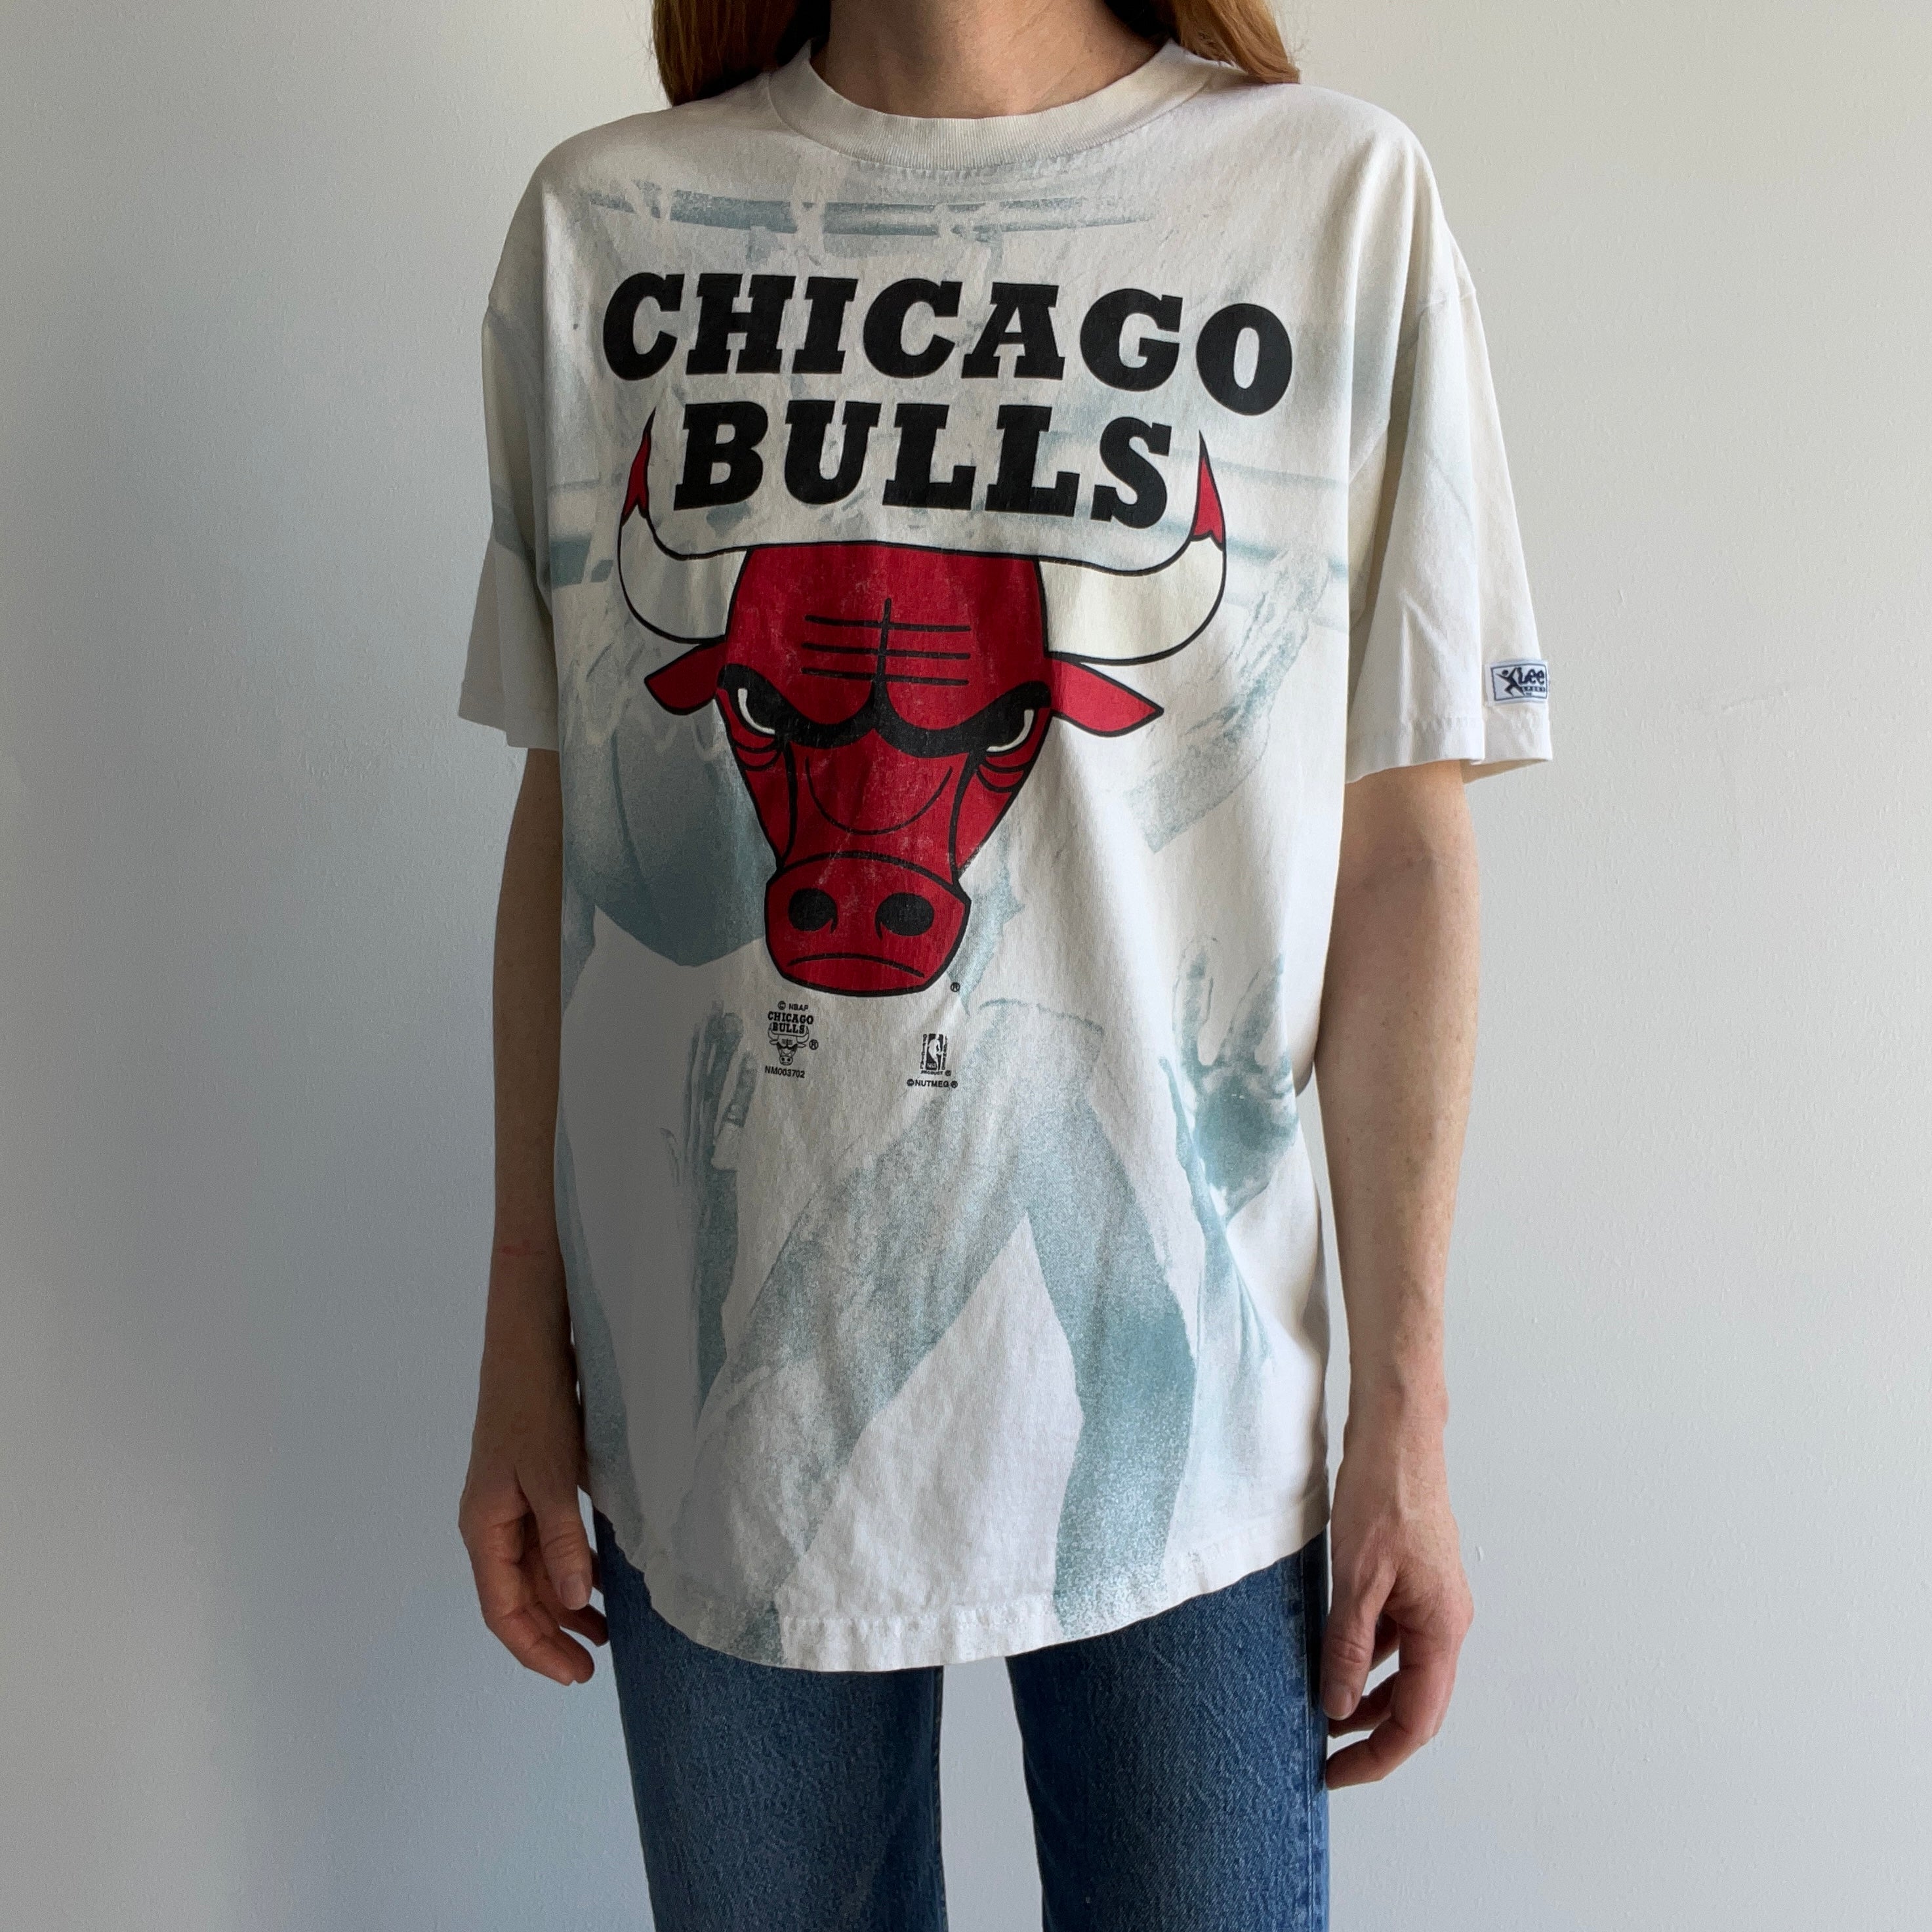 1990s Chicago Bulls by Lee Sport via Nutmeg